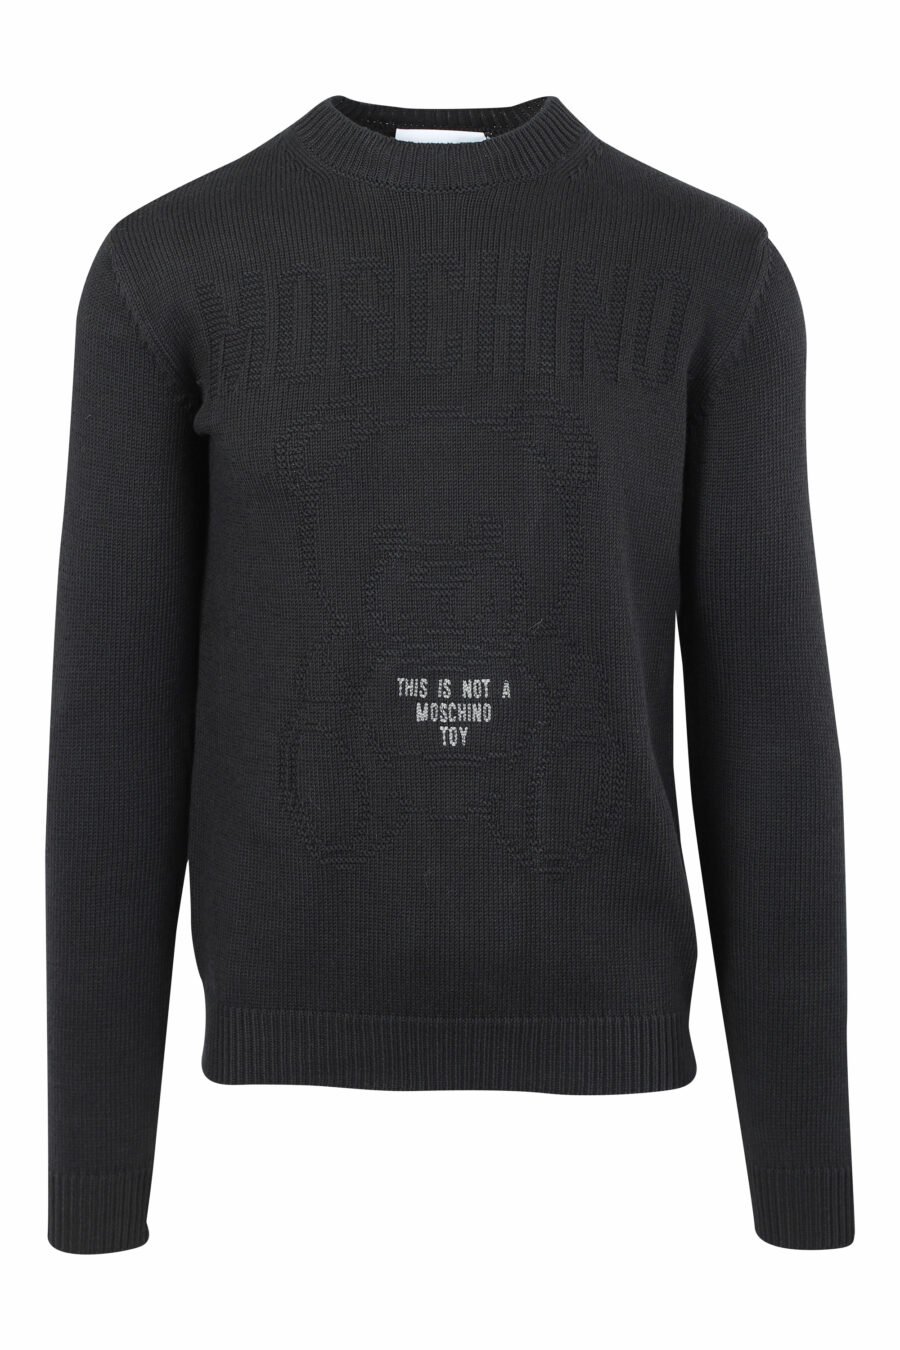 Sweat tricoté noir avec maxilogue monochrome - IMG 9667